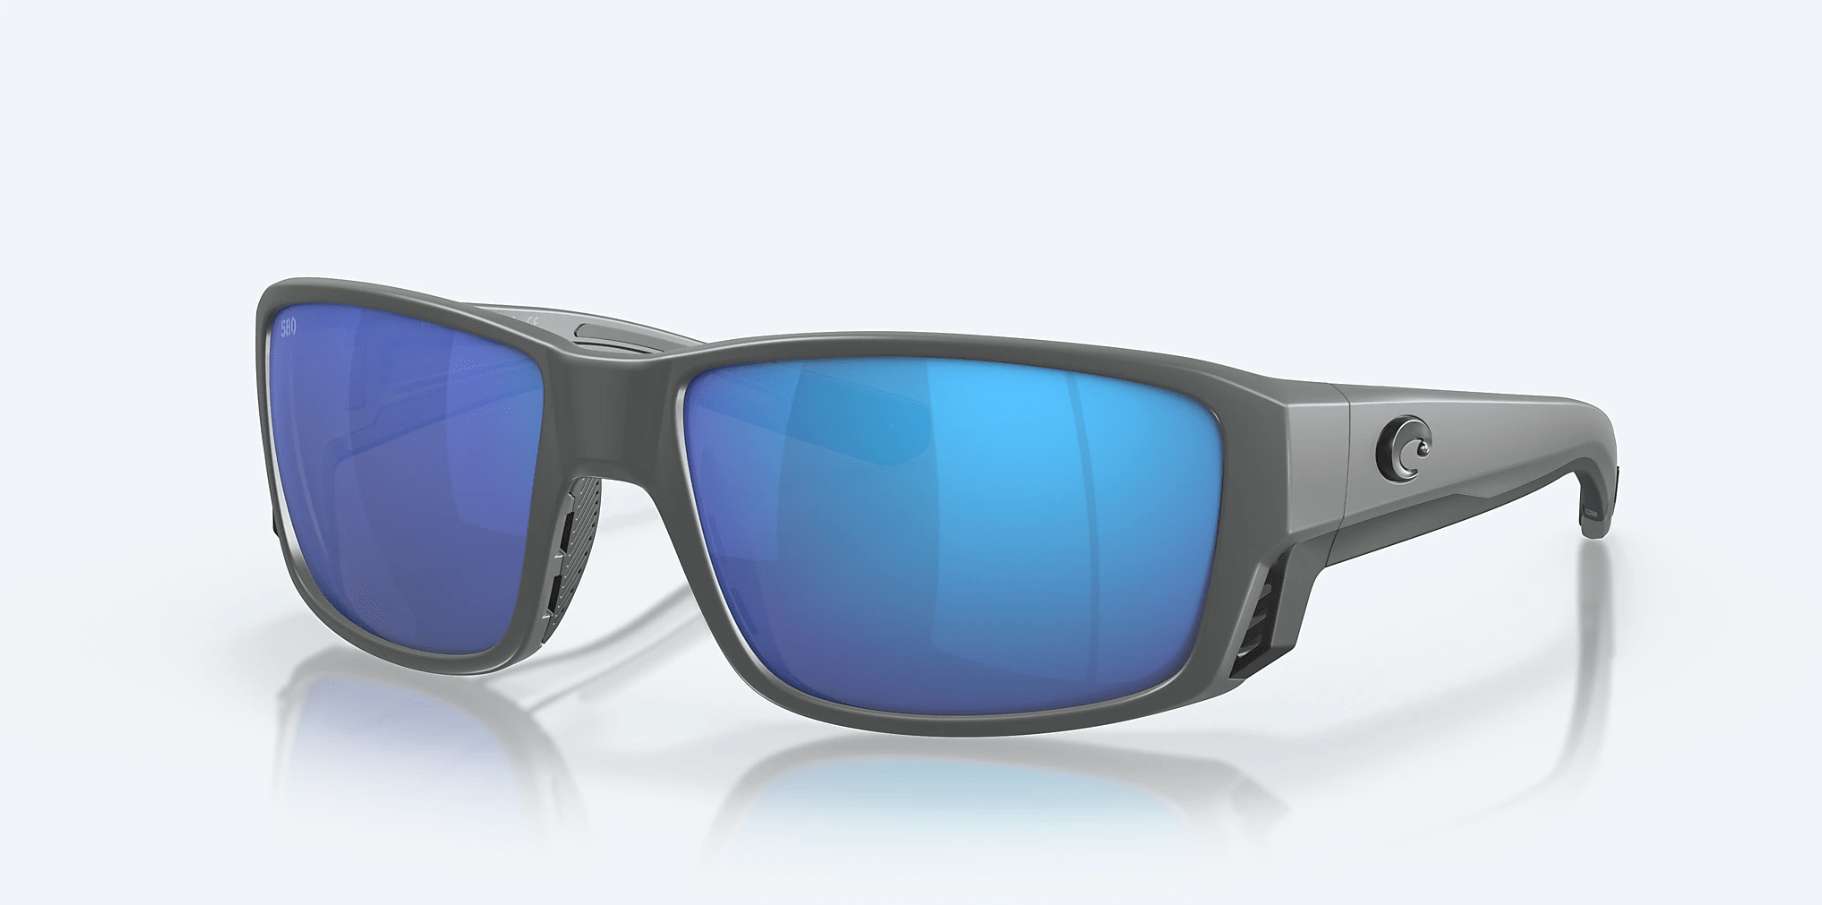 Costa Del Mar Rinconcito Polarized Sunglasses (580P - Polycarbonate Le -  The Saltwater Edge